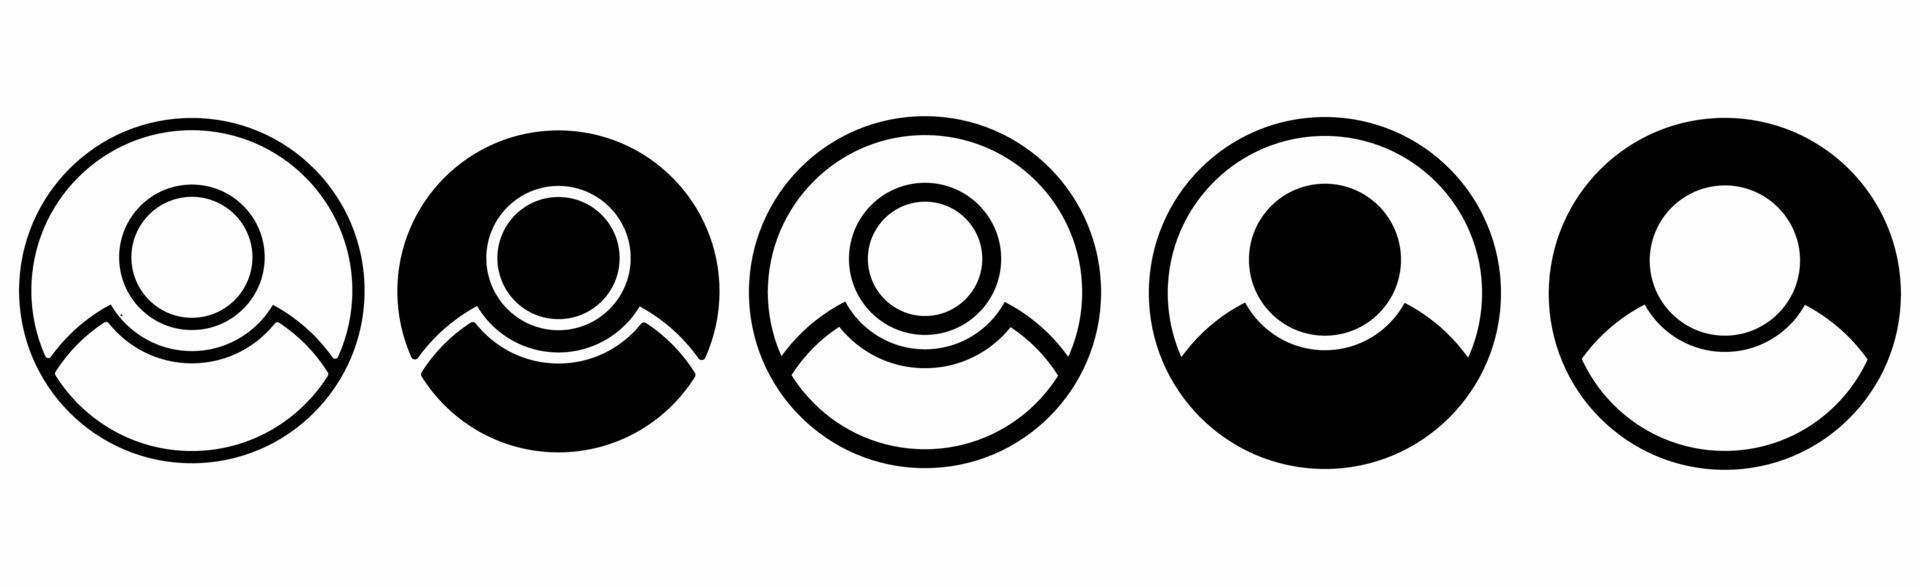 conjunto de ícones do usuário isolado no fundo branco vetor